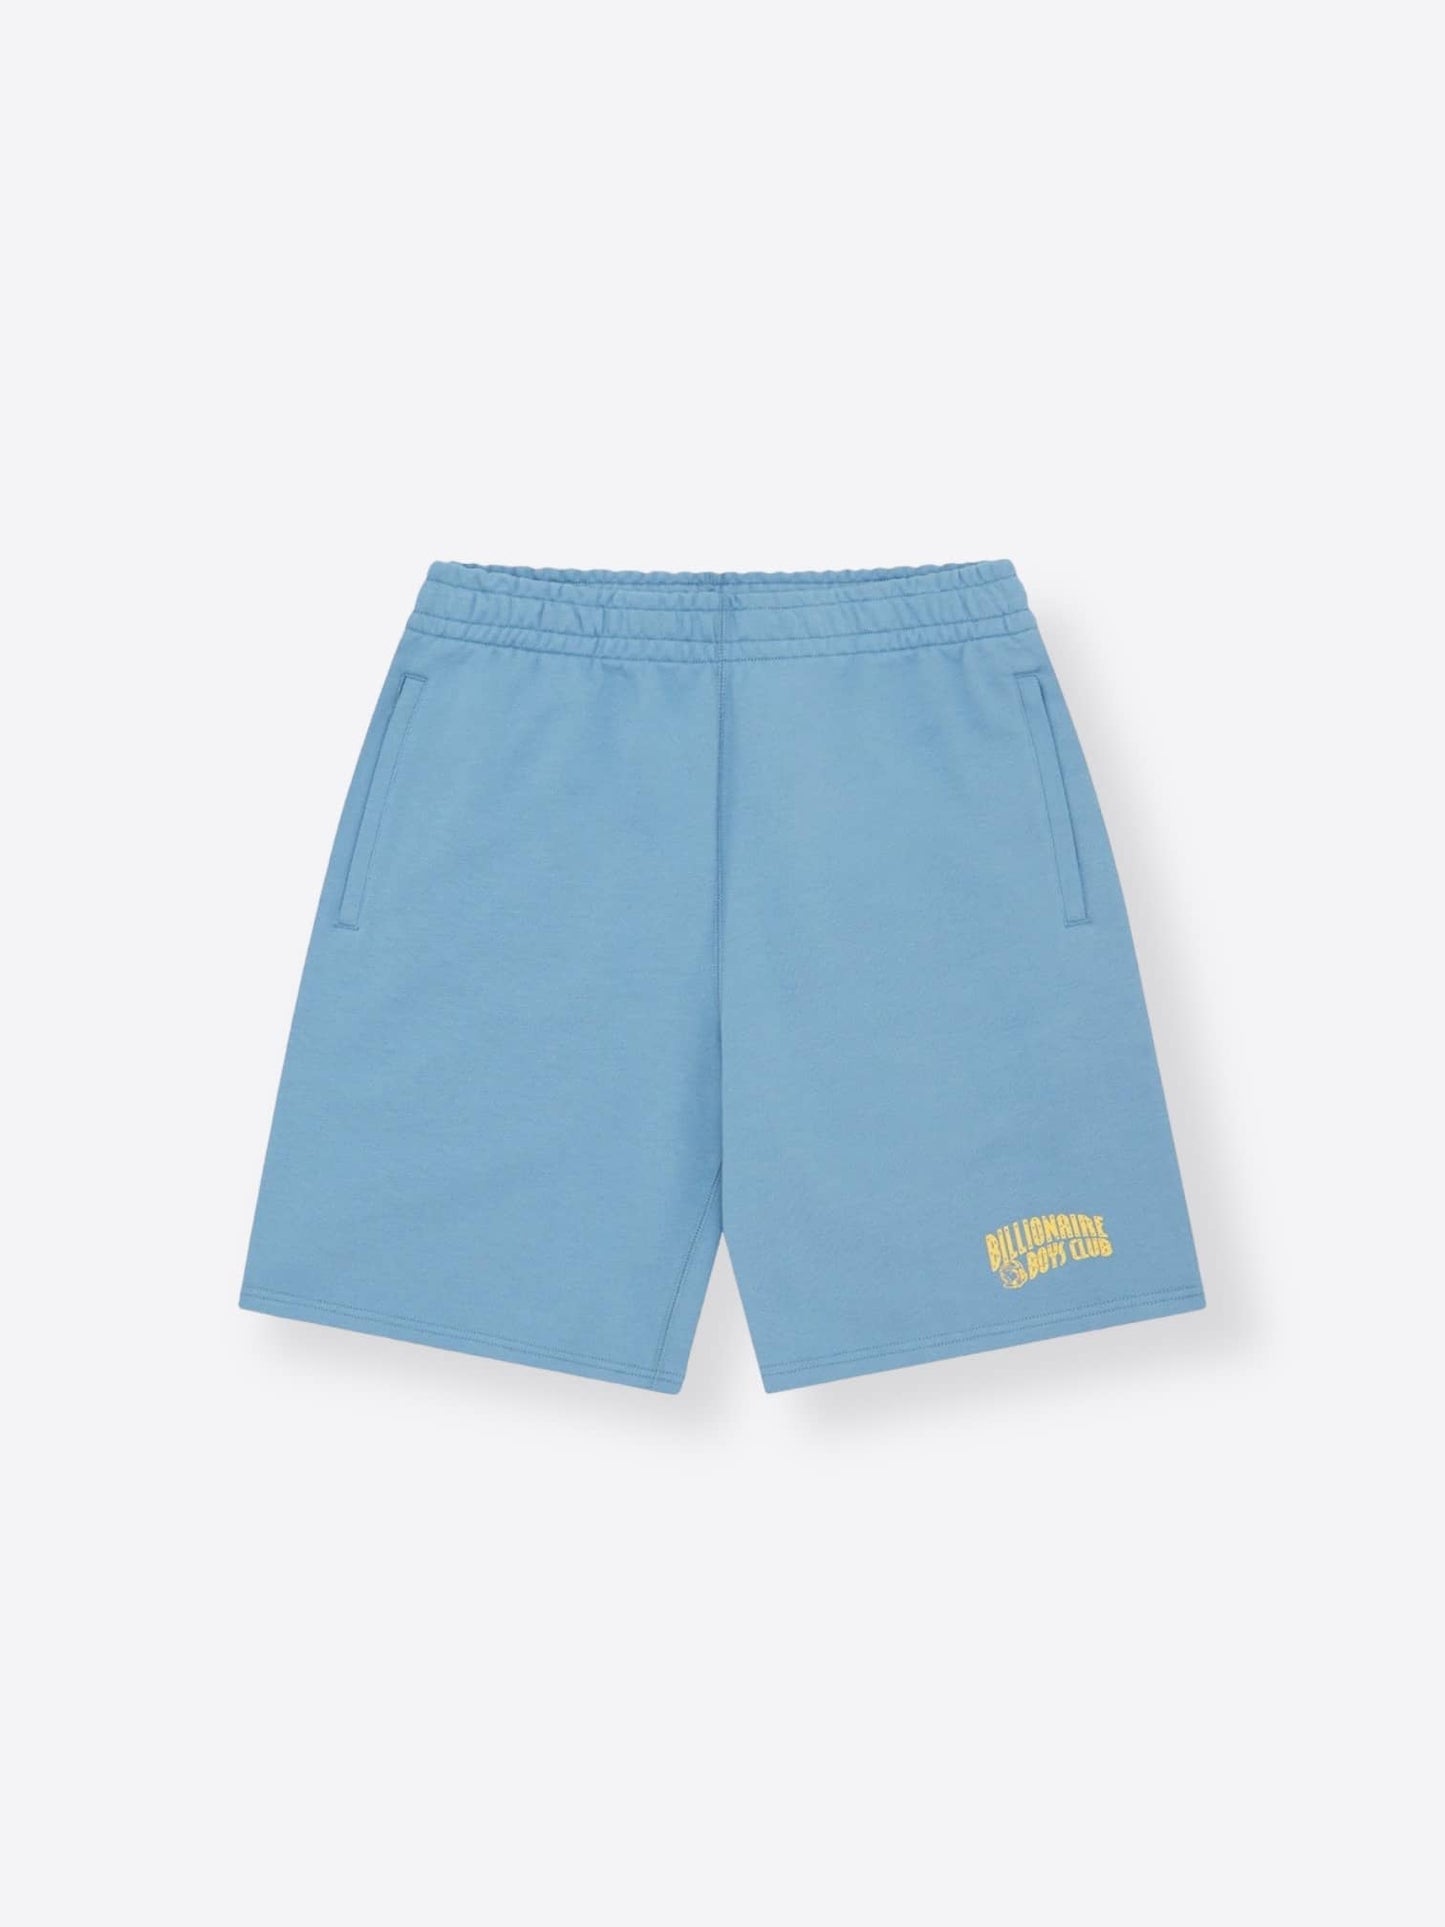 Small Arch Logo Powder Blue Shorts